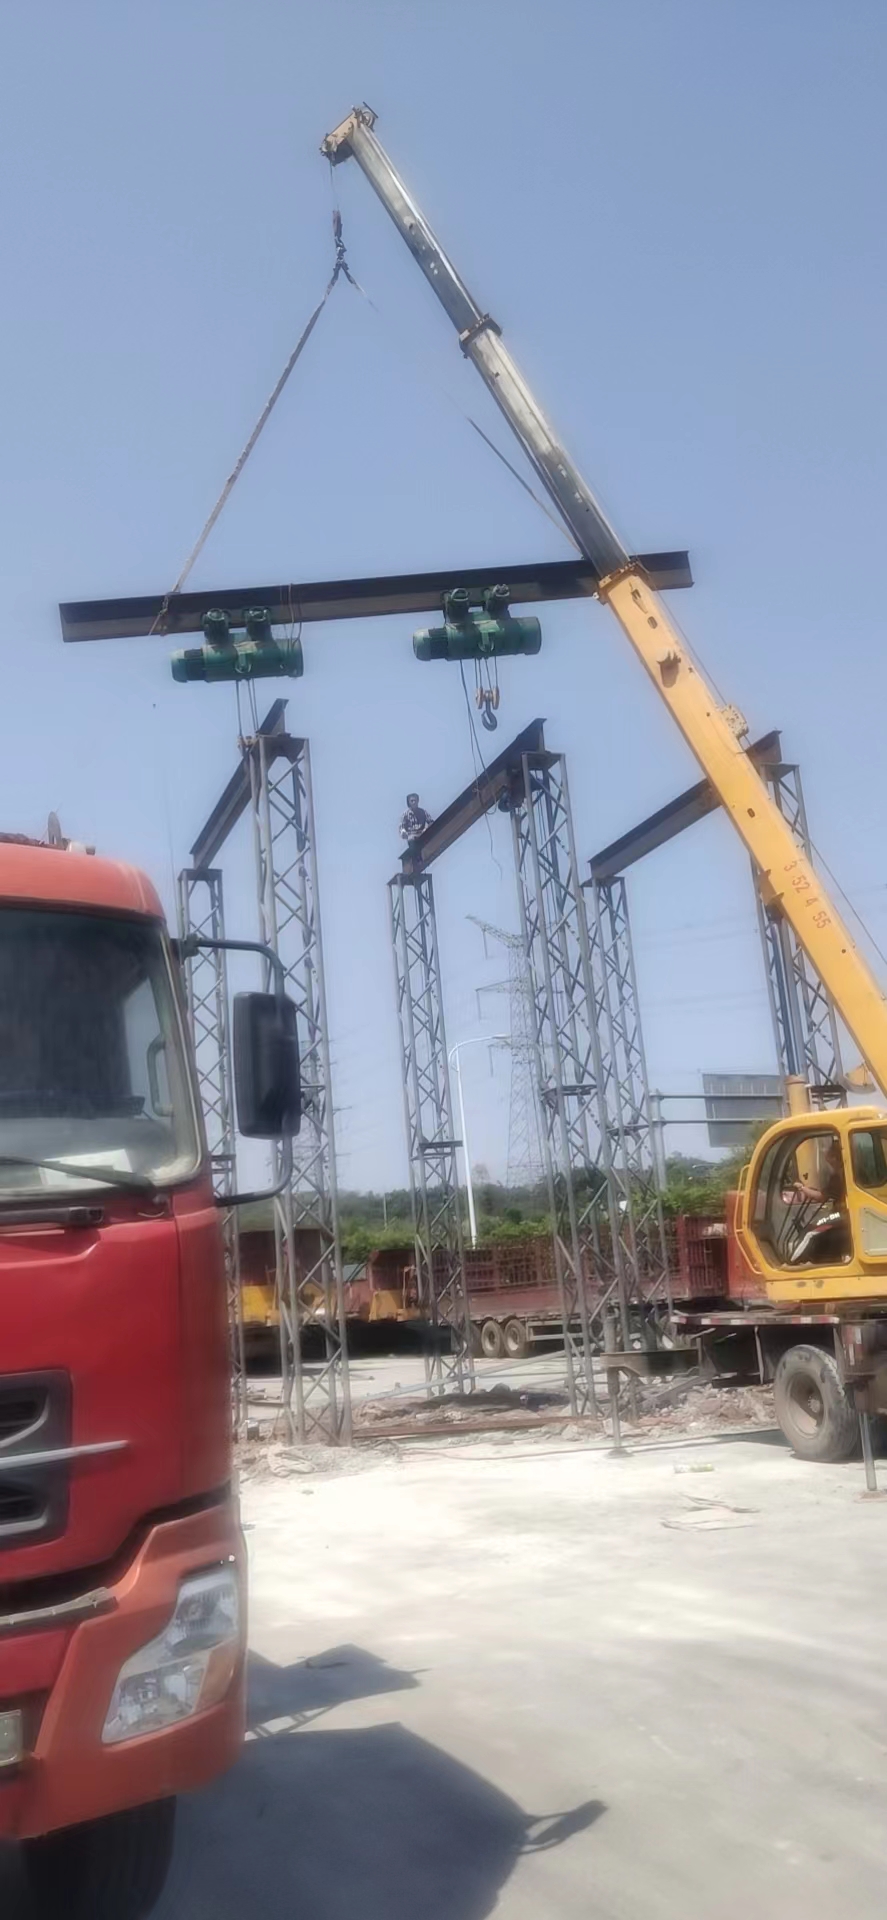 吊装货车葫芦架